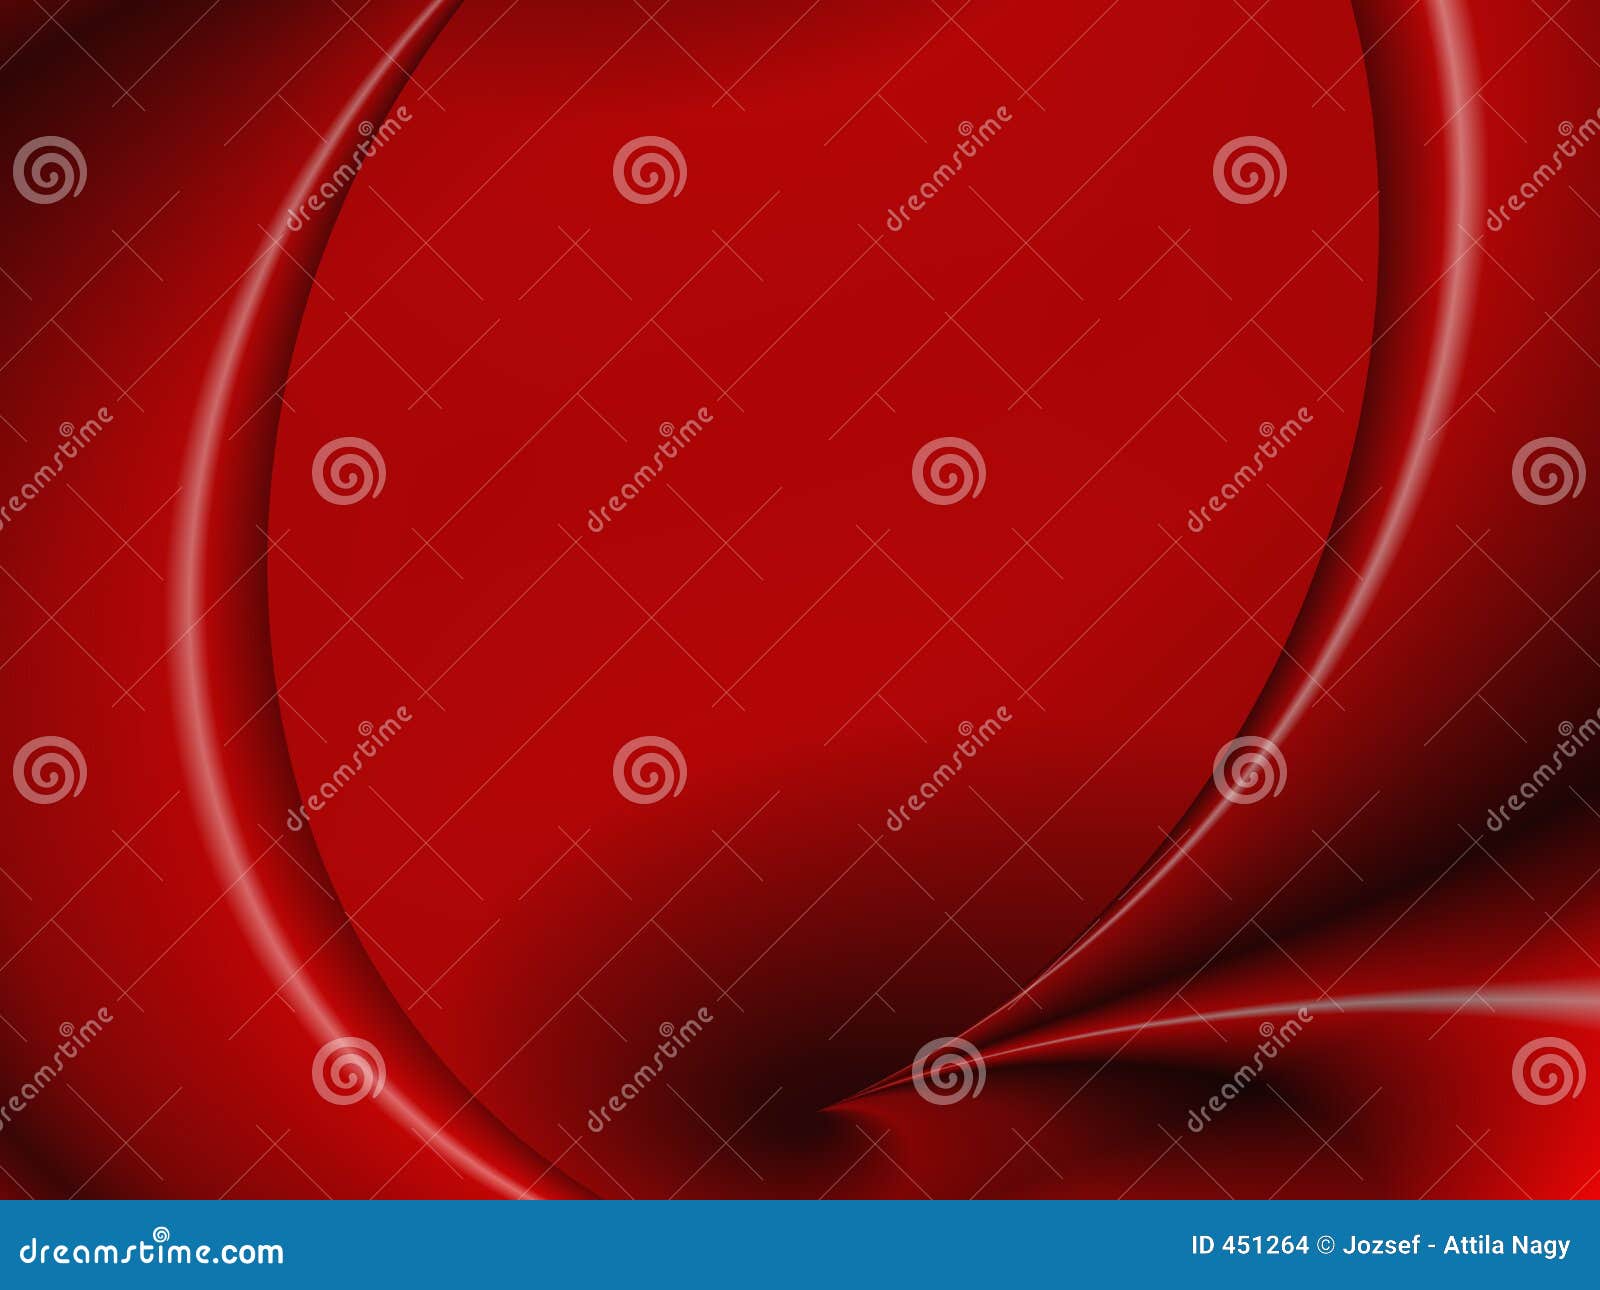 Red Curtain stock illustration. Illustration of wallpaper - 451264